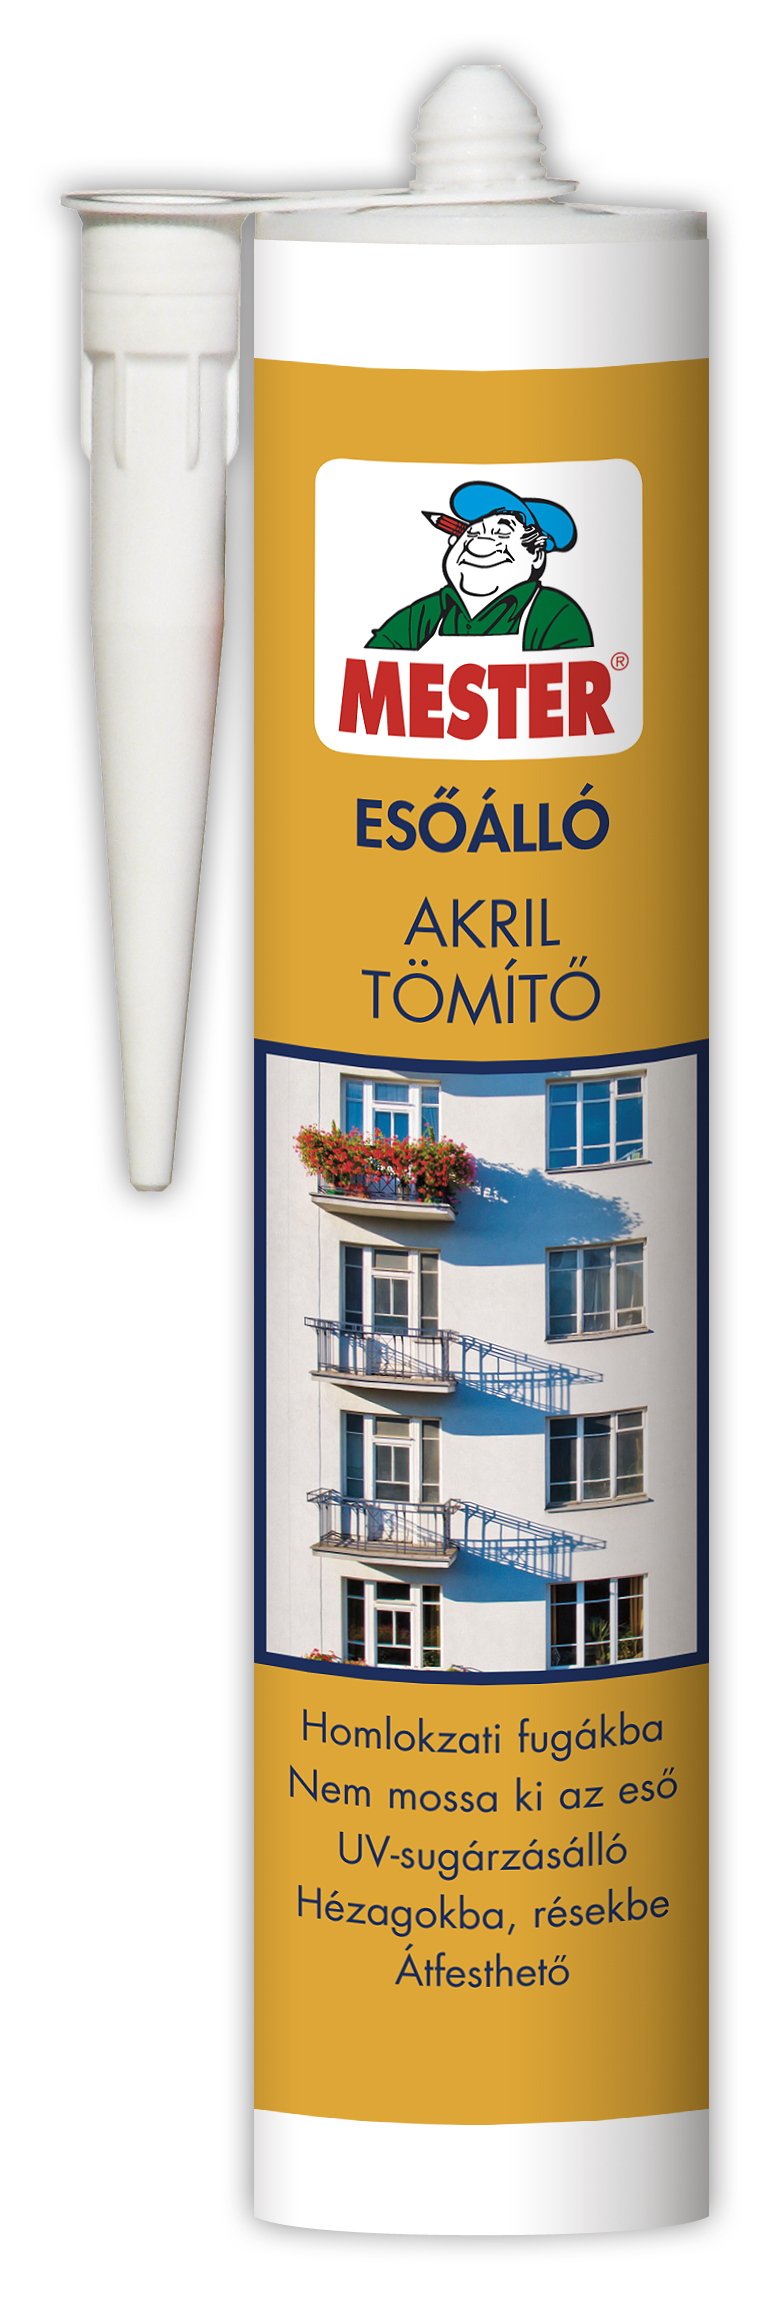 Mester Esőálló Akril tömítő,festhető fehér310ml.jpg